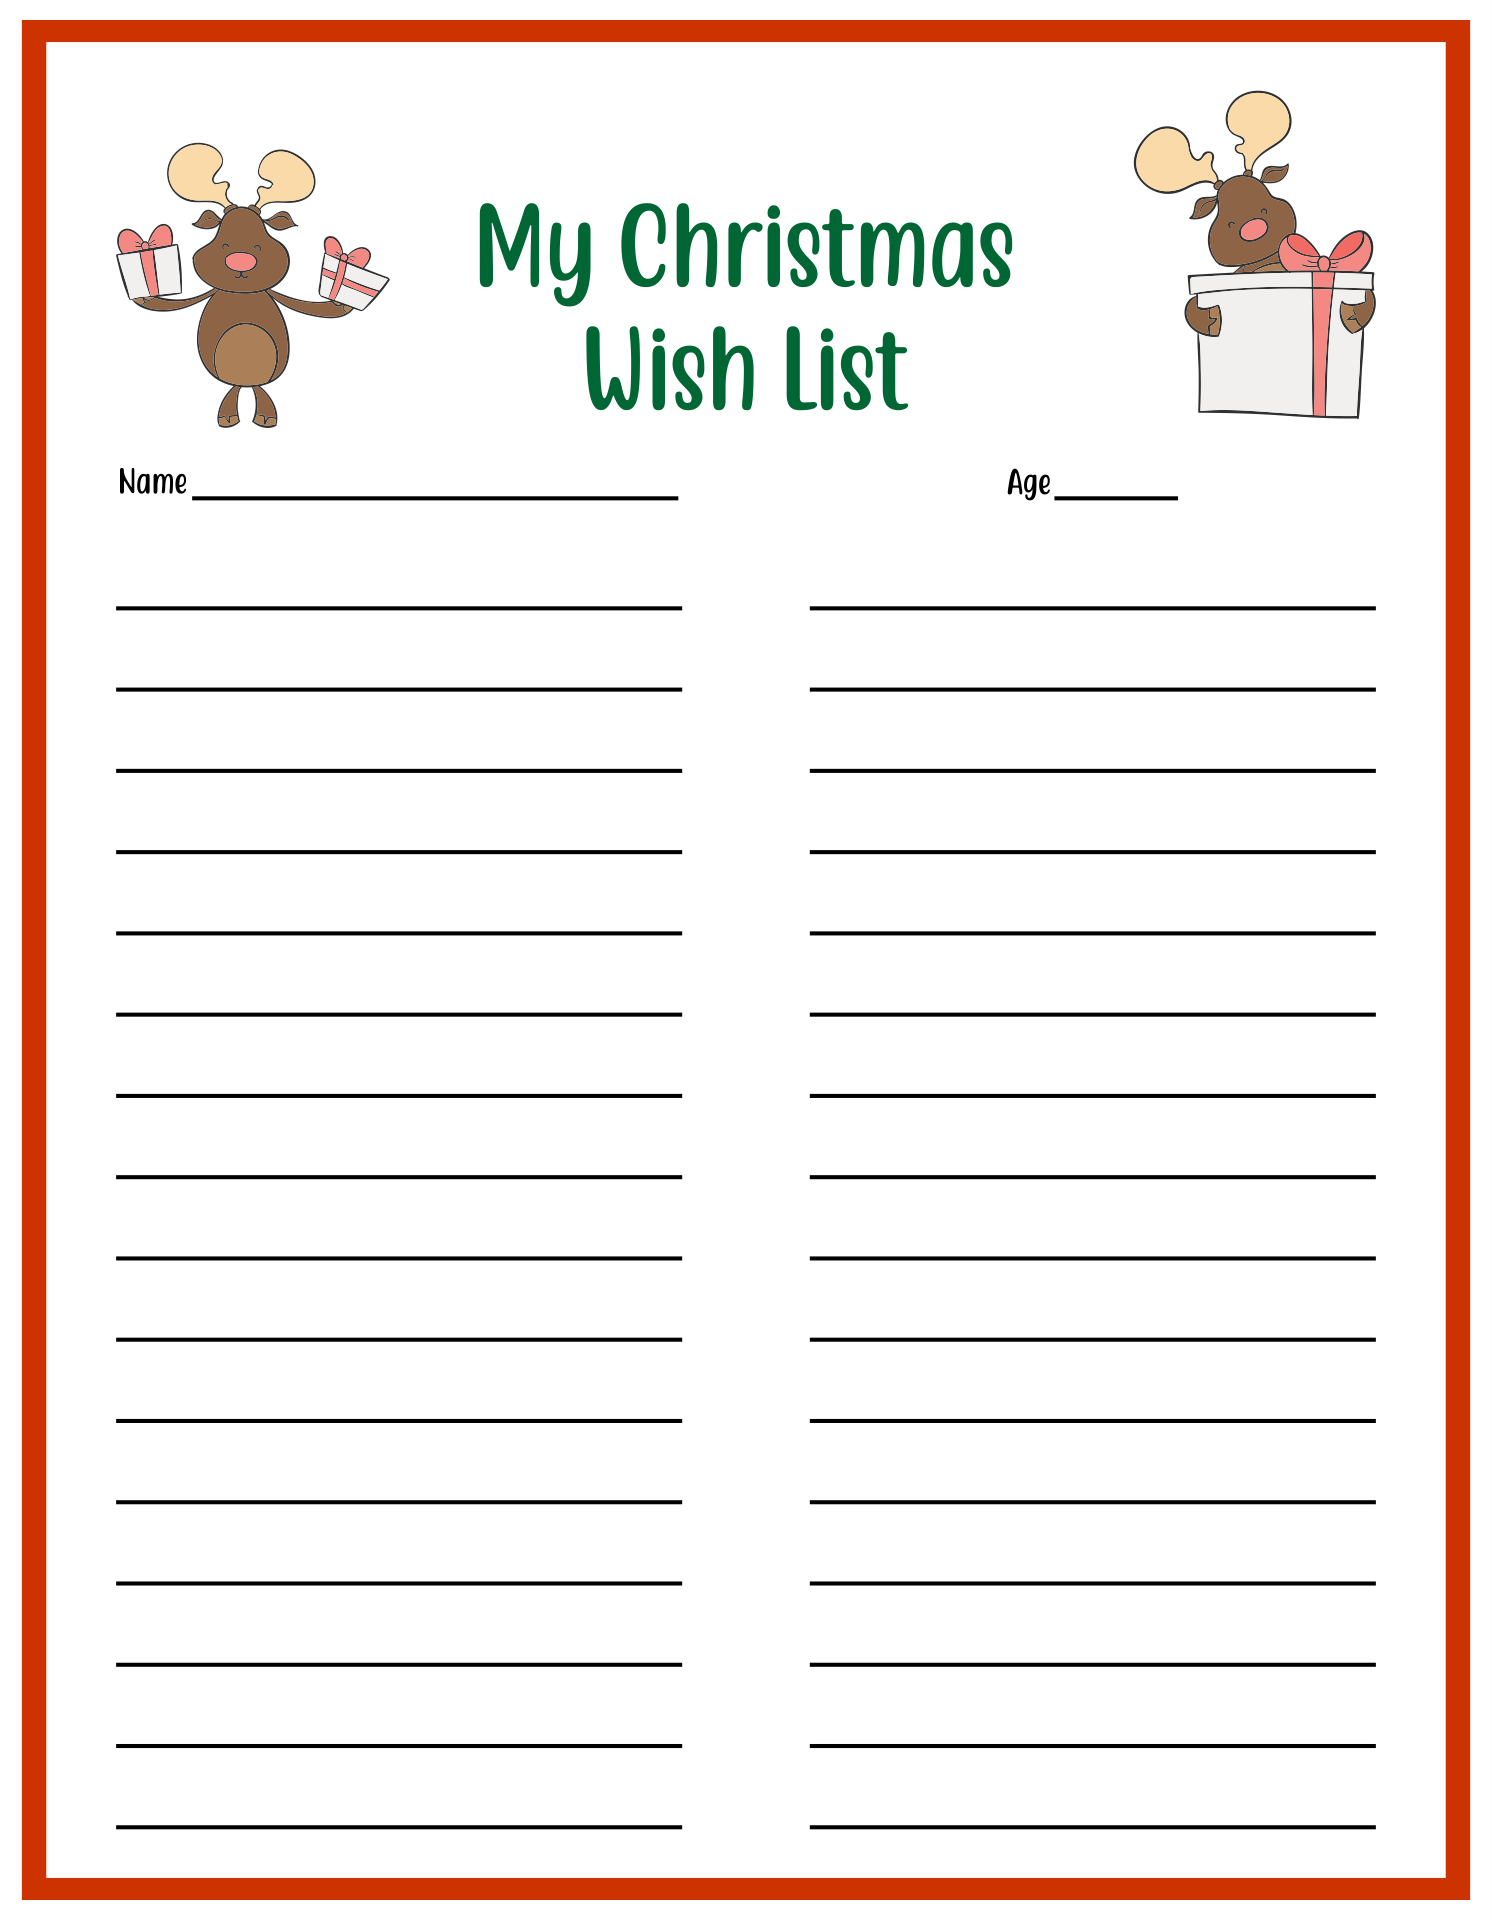 Christmas Wish List Free Printable